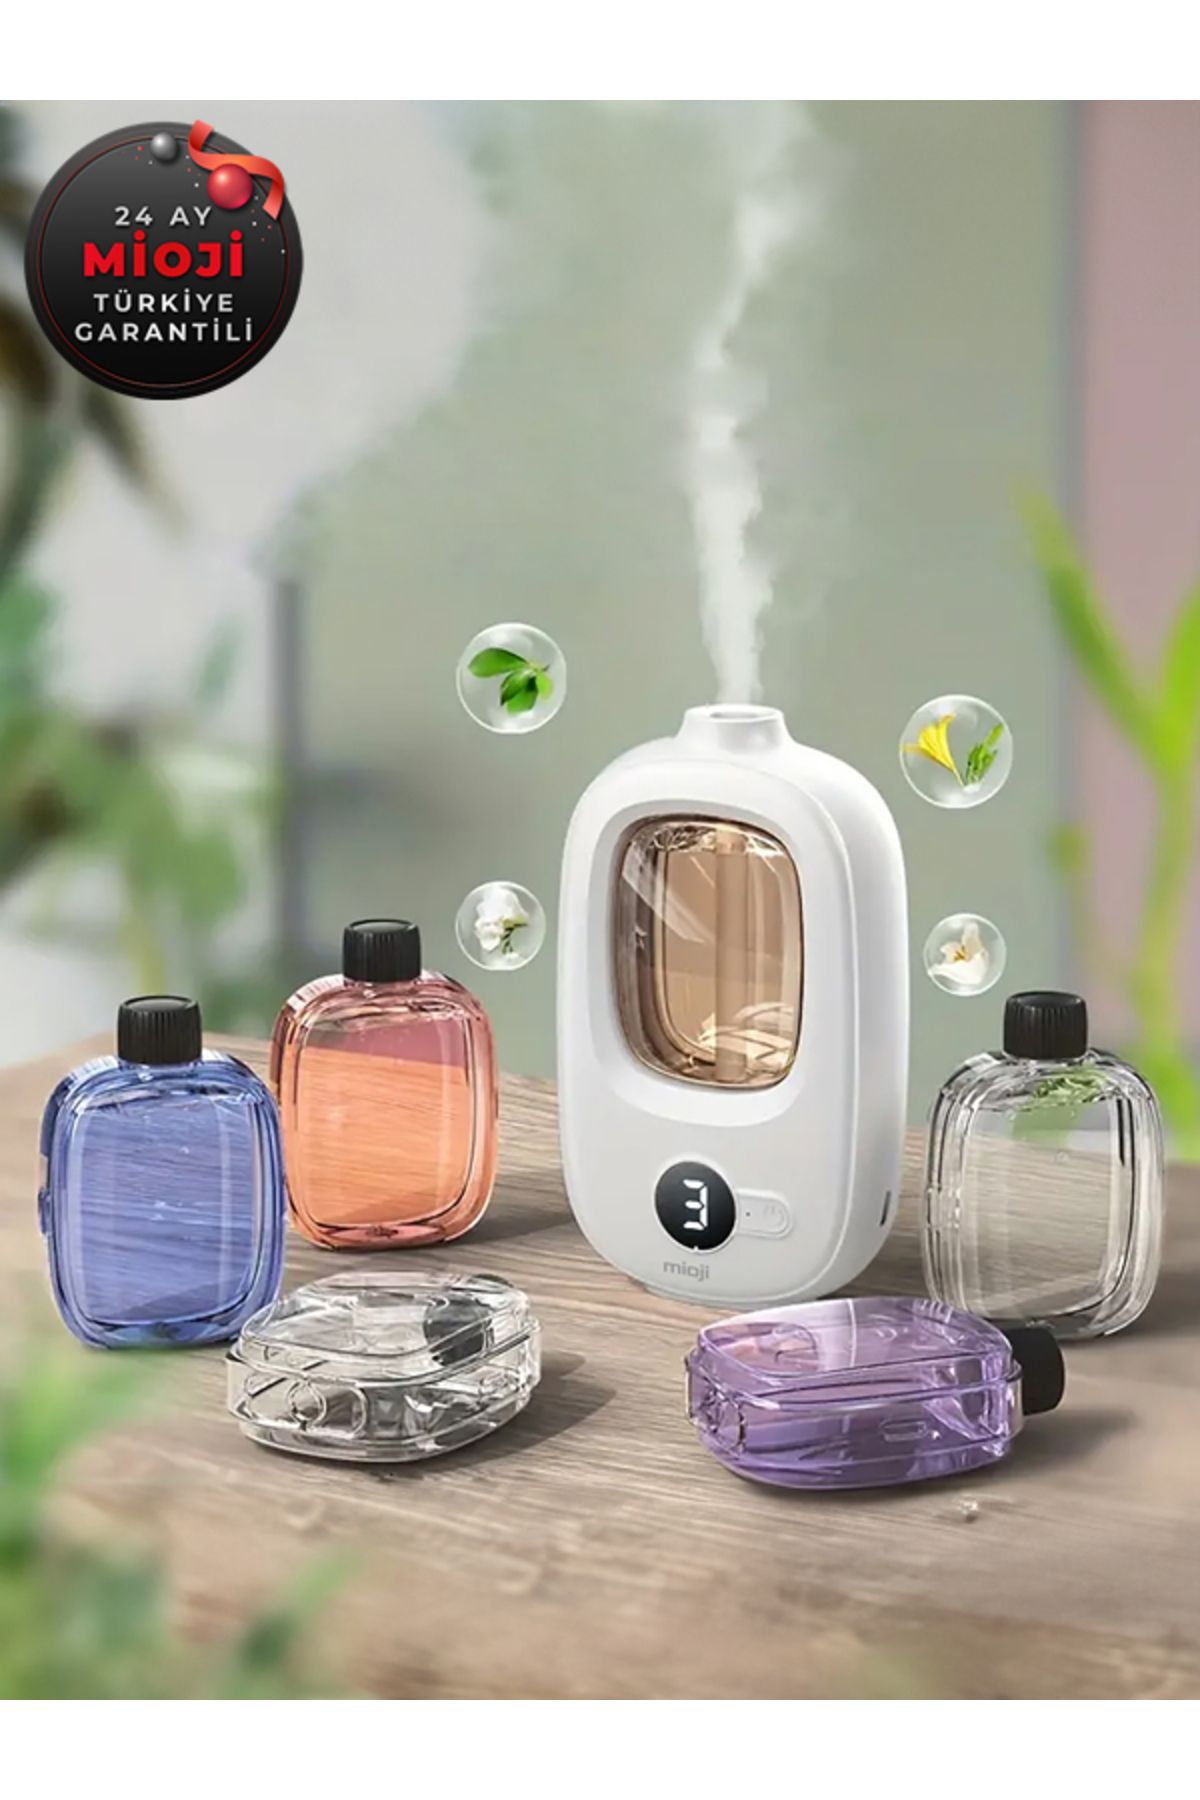 Mioji Mio Smell 2x Aromaterapi 1500mah Şarjlı Yeni Nesil Koku Makinesi Shangri-la Kokusu